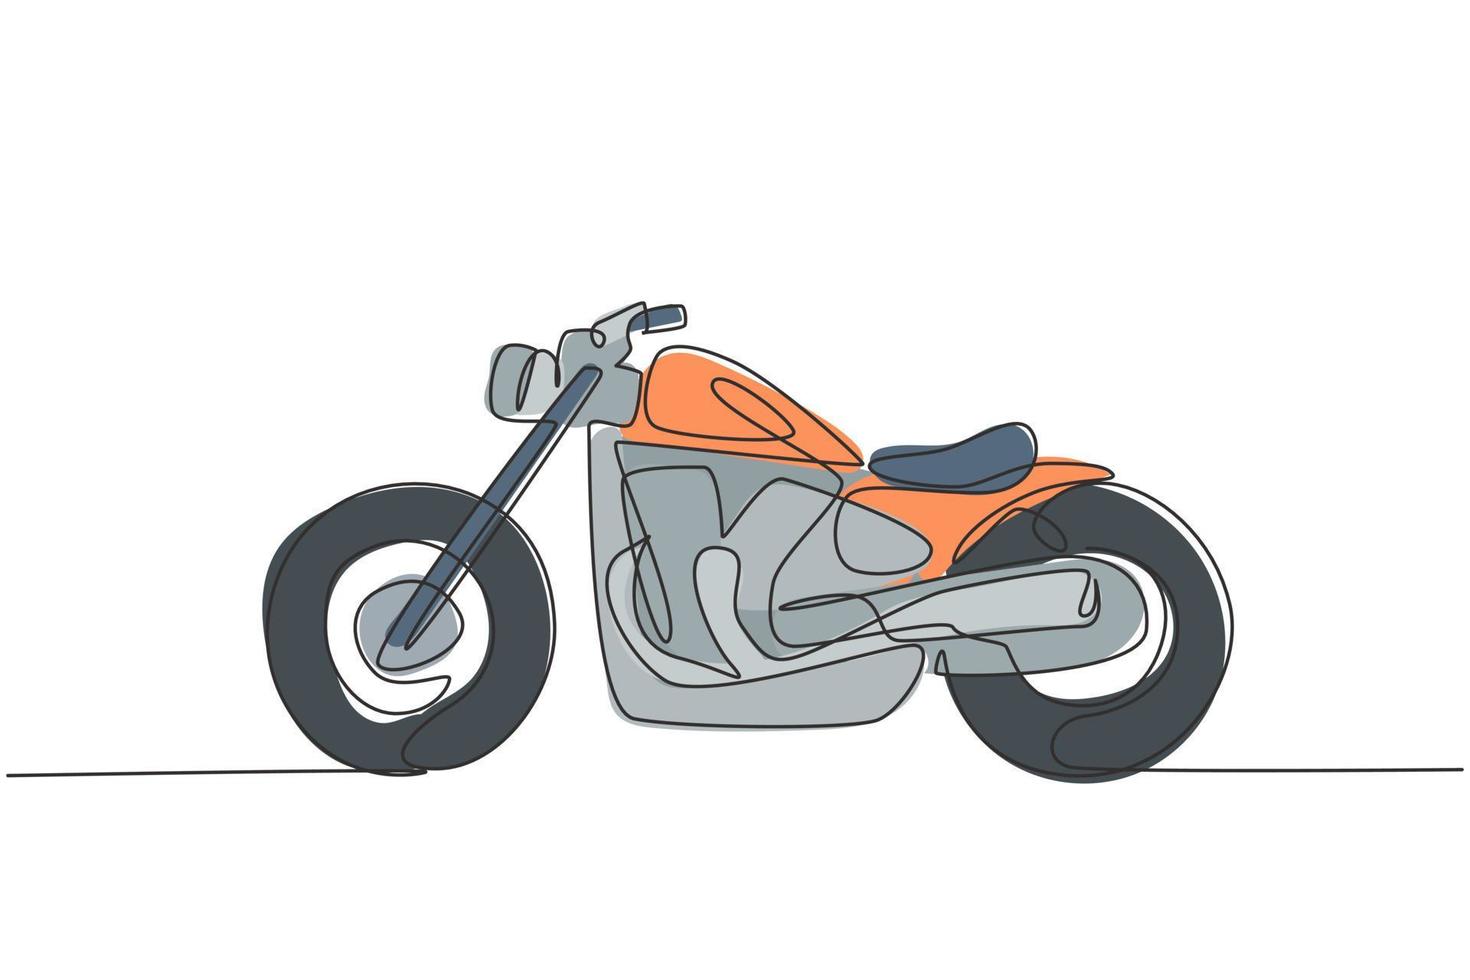 Eine durchgehende Strichzeichnung des Retro-Oldtimer-Motorradsymbols. klassisches Motorrad-Transportkonzept Single-Line-Draw-Design-Grafik-Vektor-Illustration vektor